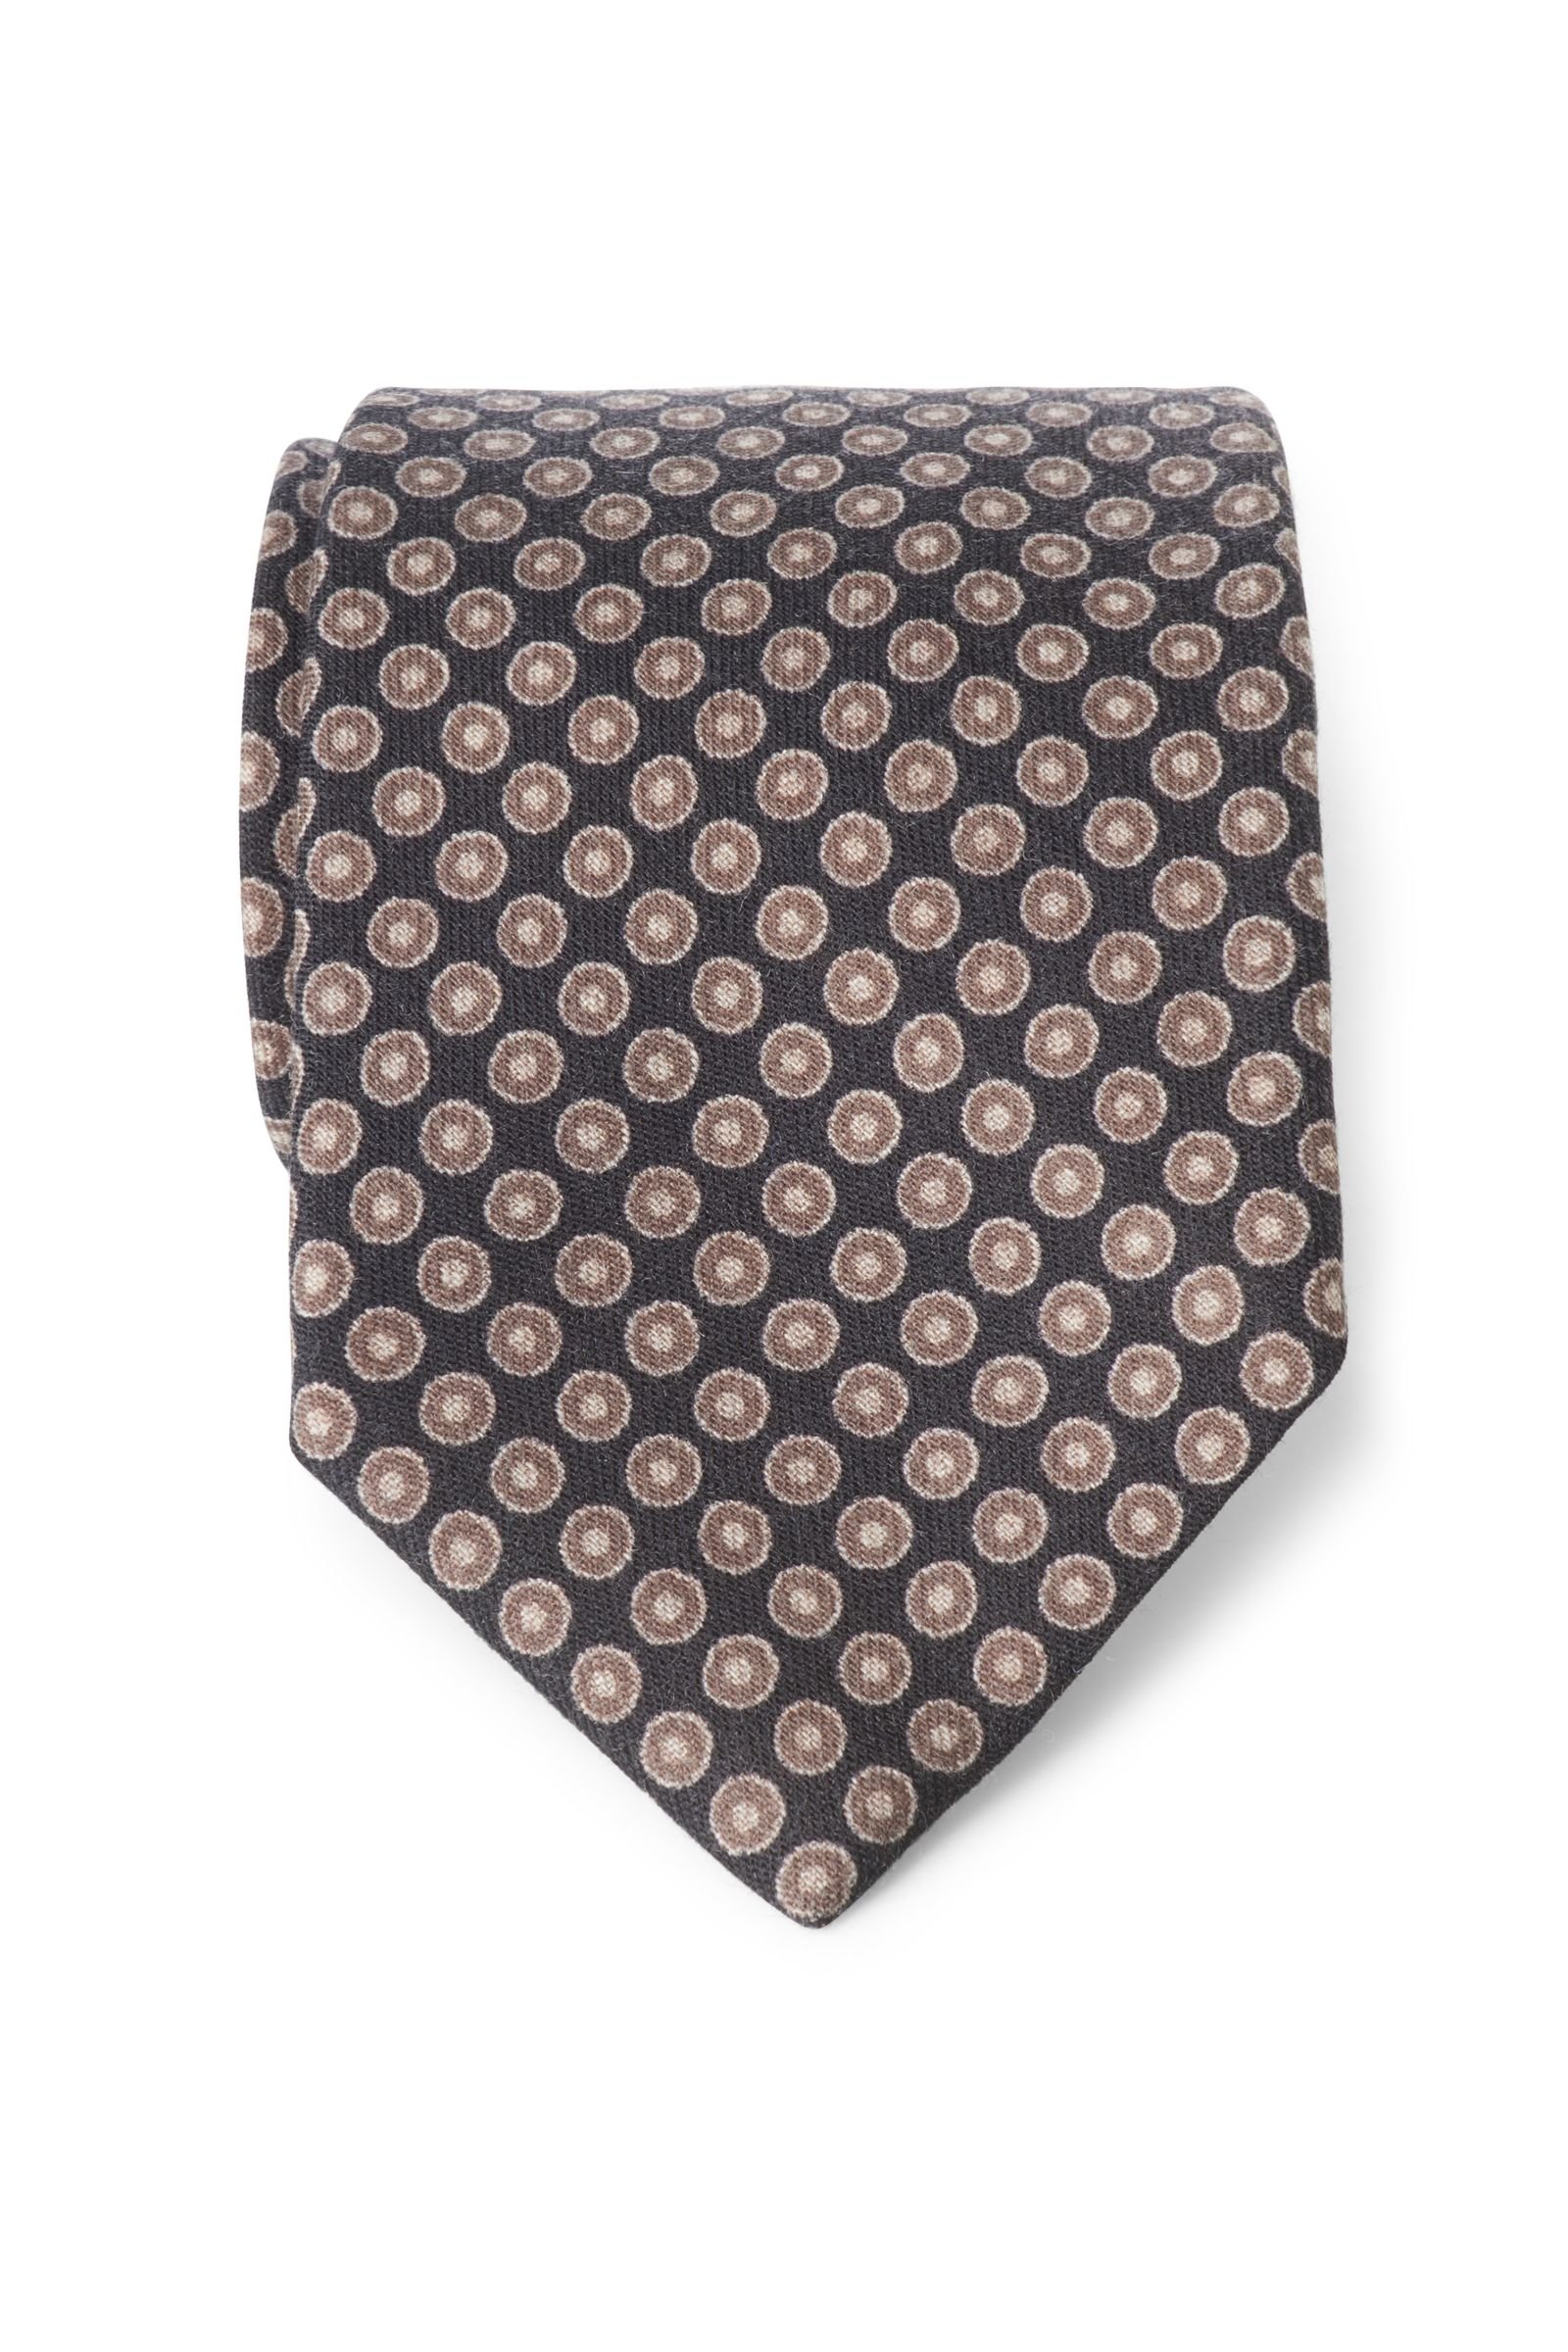 Wool tie dark brown patterned